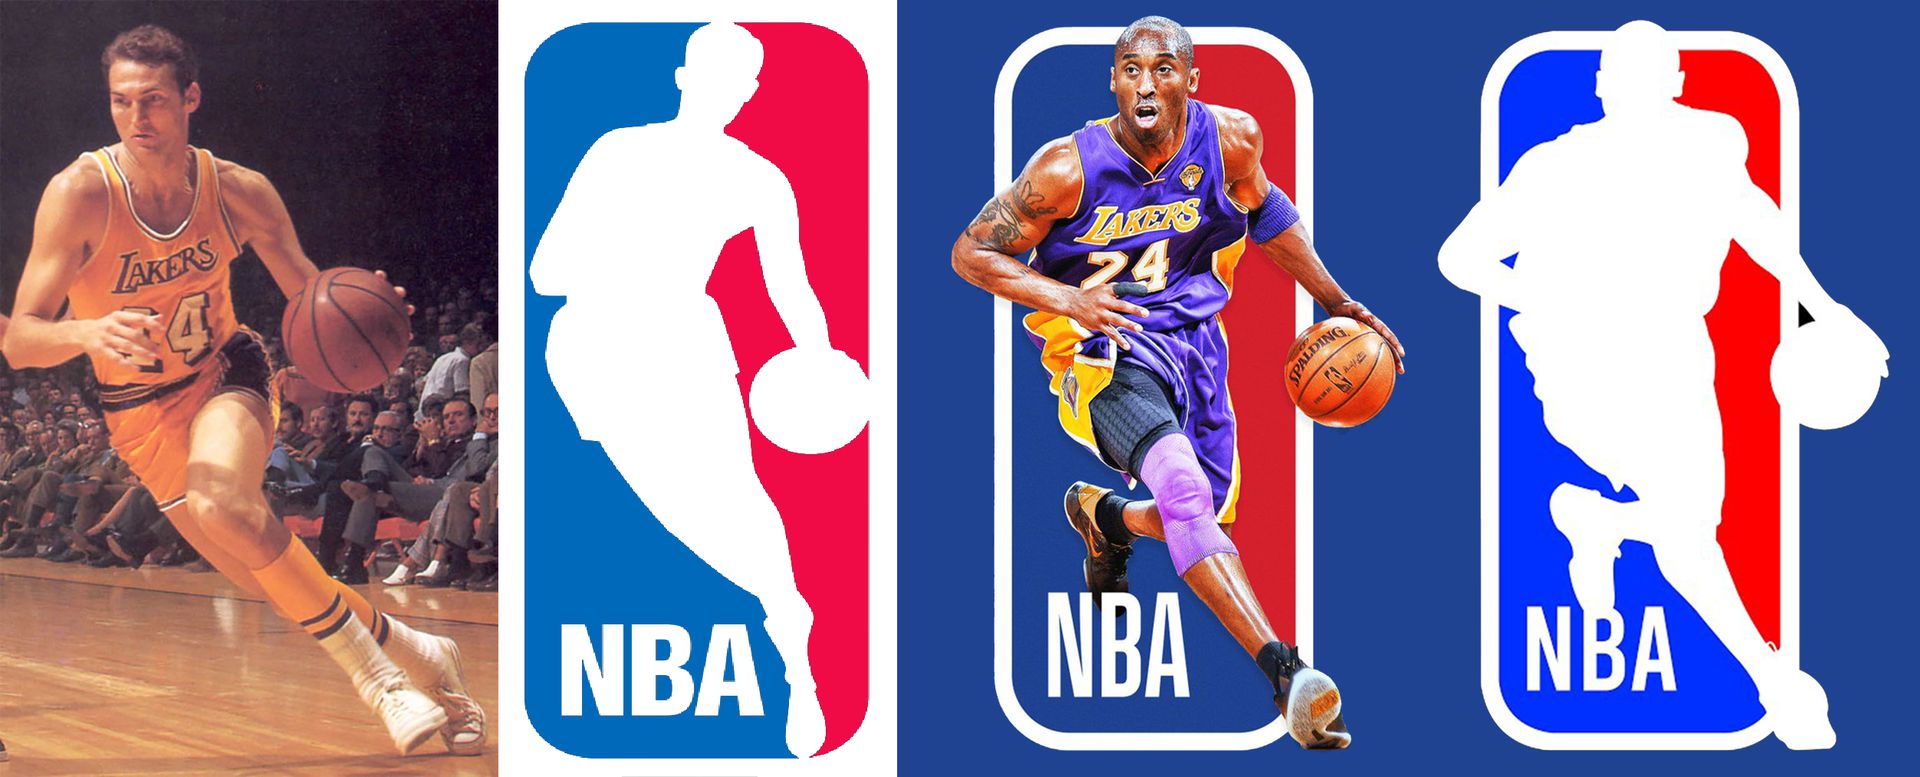 Az NBA jelenlegi logójában 1971 óta Jerry West szerepel. A drukkerek őt cserélnék le a most elhunyt Kobe Bryantre.